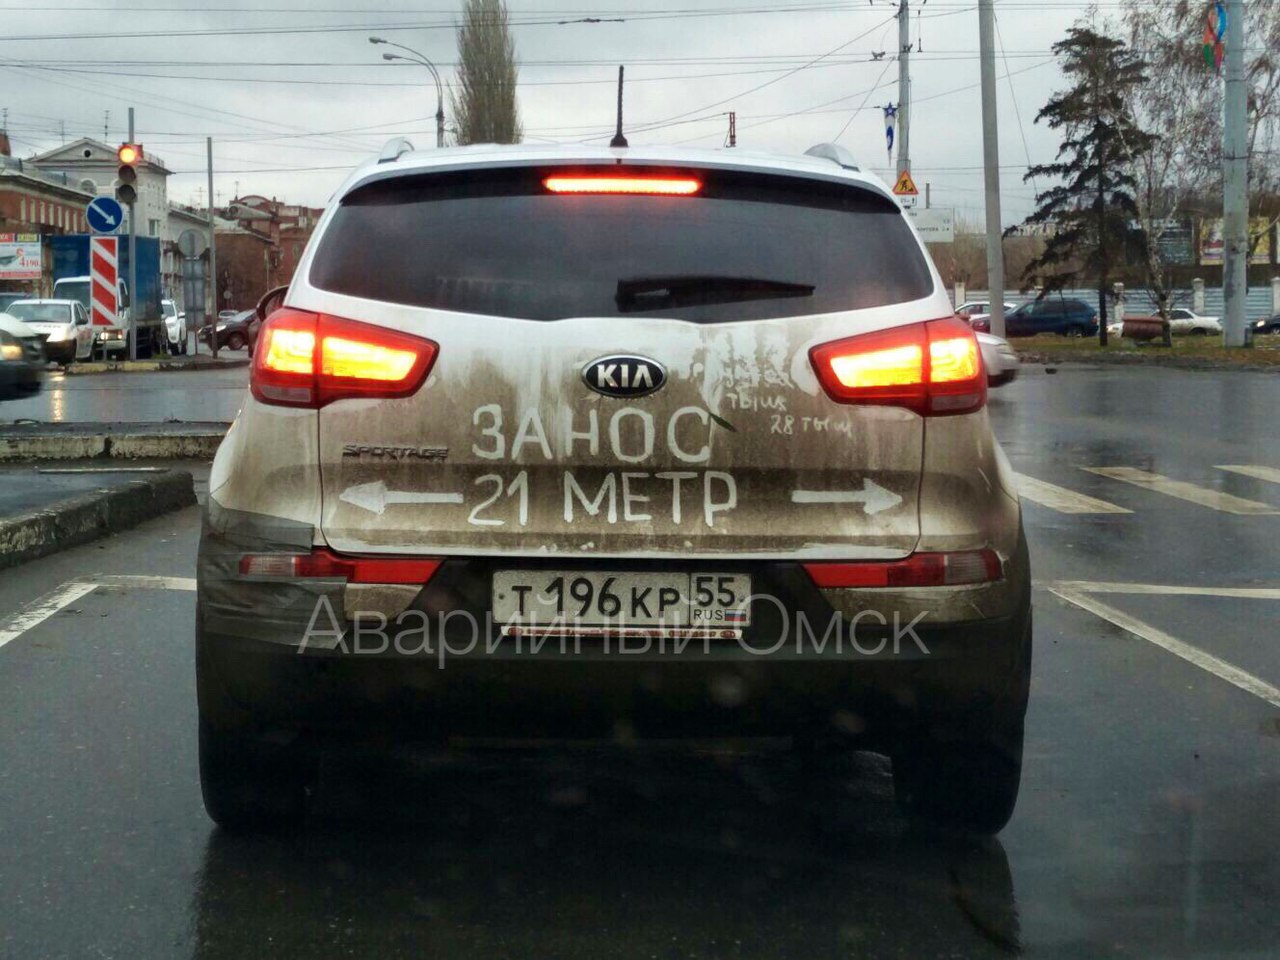 По Омску ездит машина с надписью «занос 21 метр»